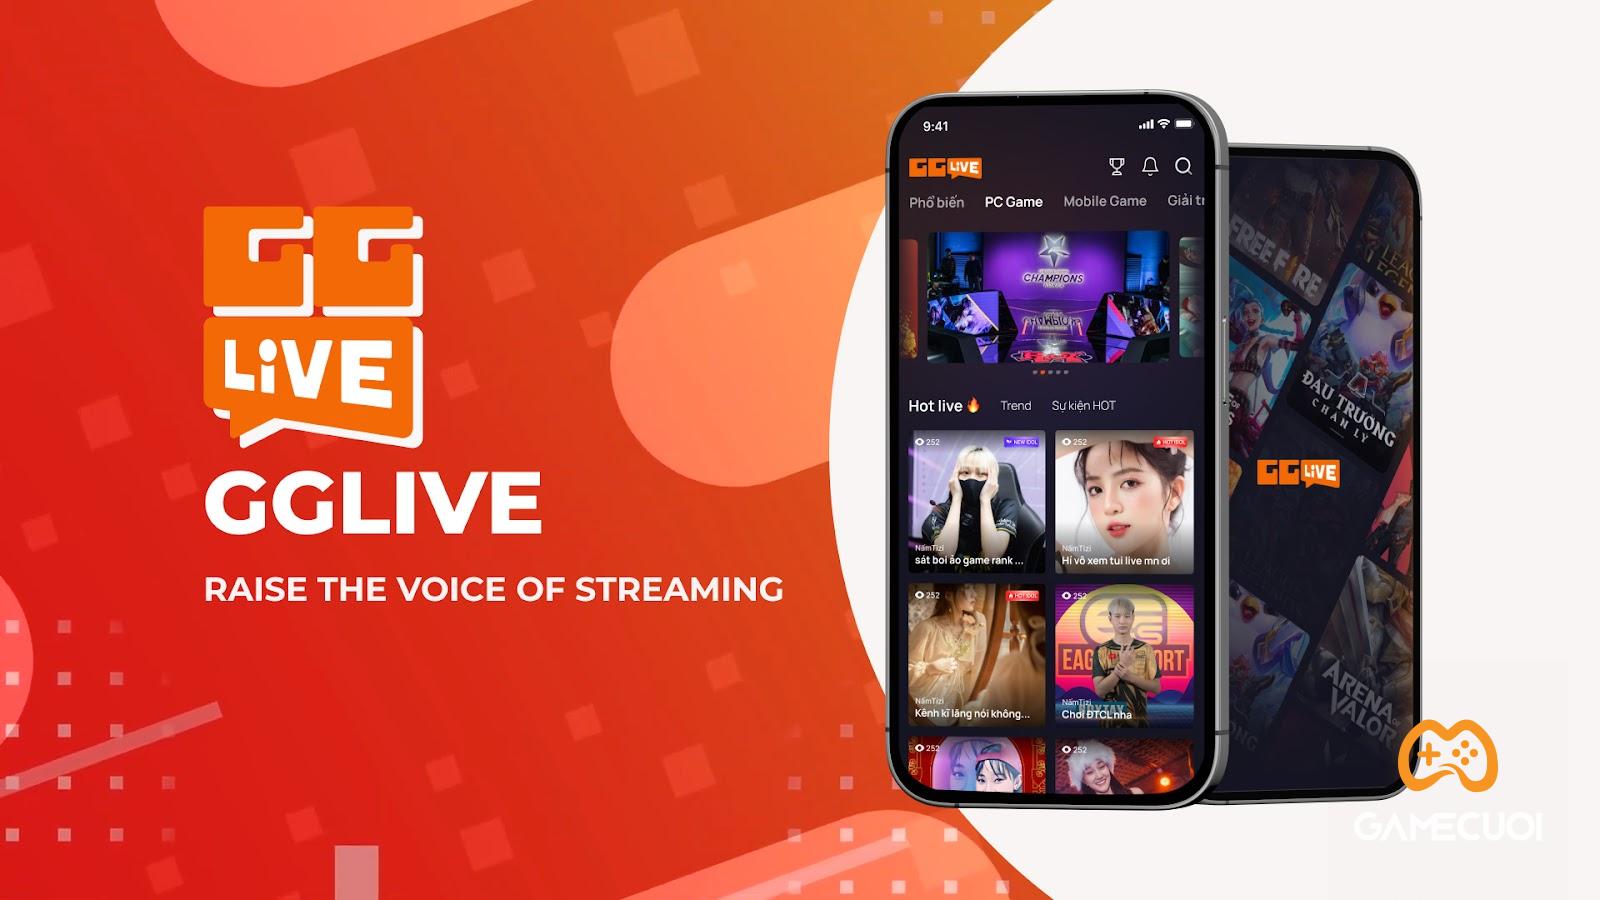 GG Live cùng khát vọng phát triển ngành streaming và hiện thực hóa ước mơ của những streamer trẻ